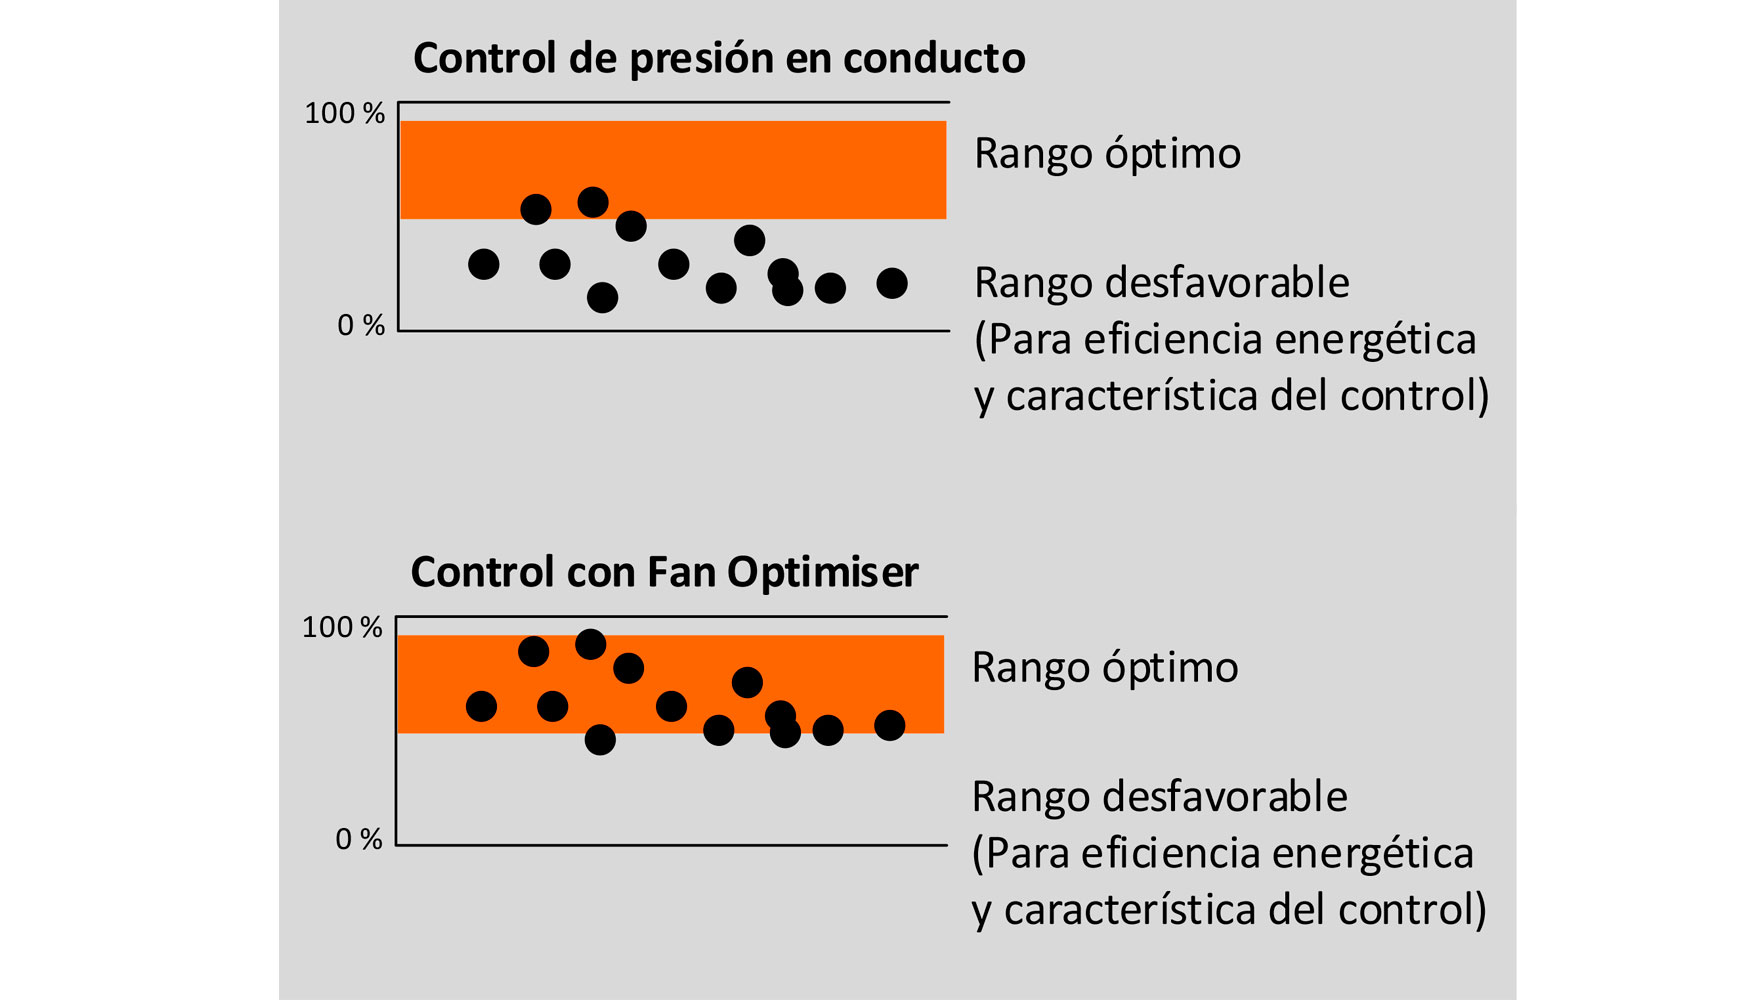 Fig. 4. Imgenes de las posiciones de las compuertas: Control por presin vs. control mediante Fan Optimiser